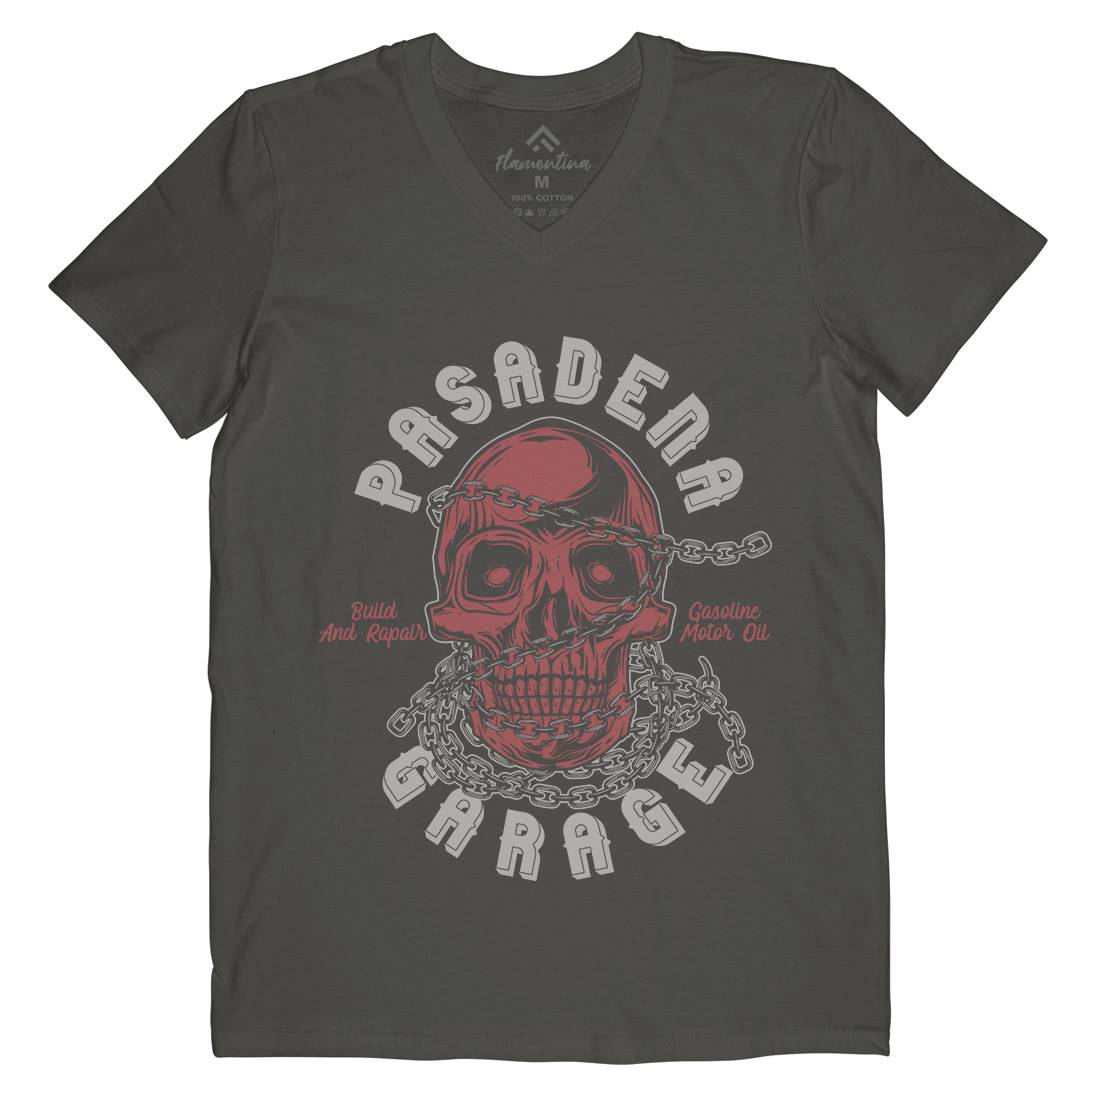 Pasadena Mens V-Neck T-Shirt Motorcycles B847